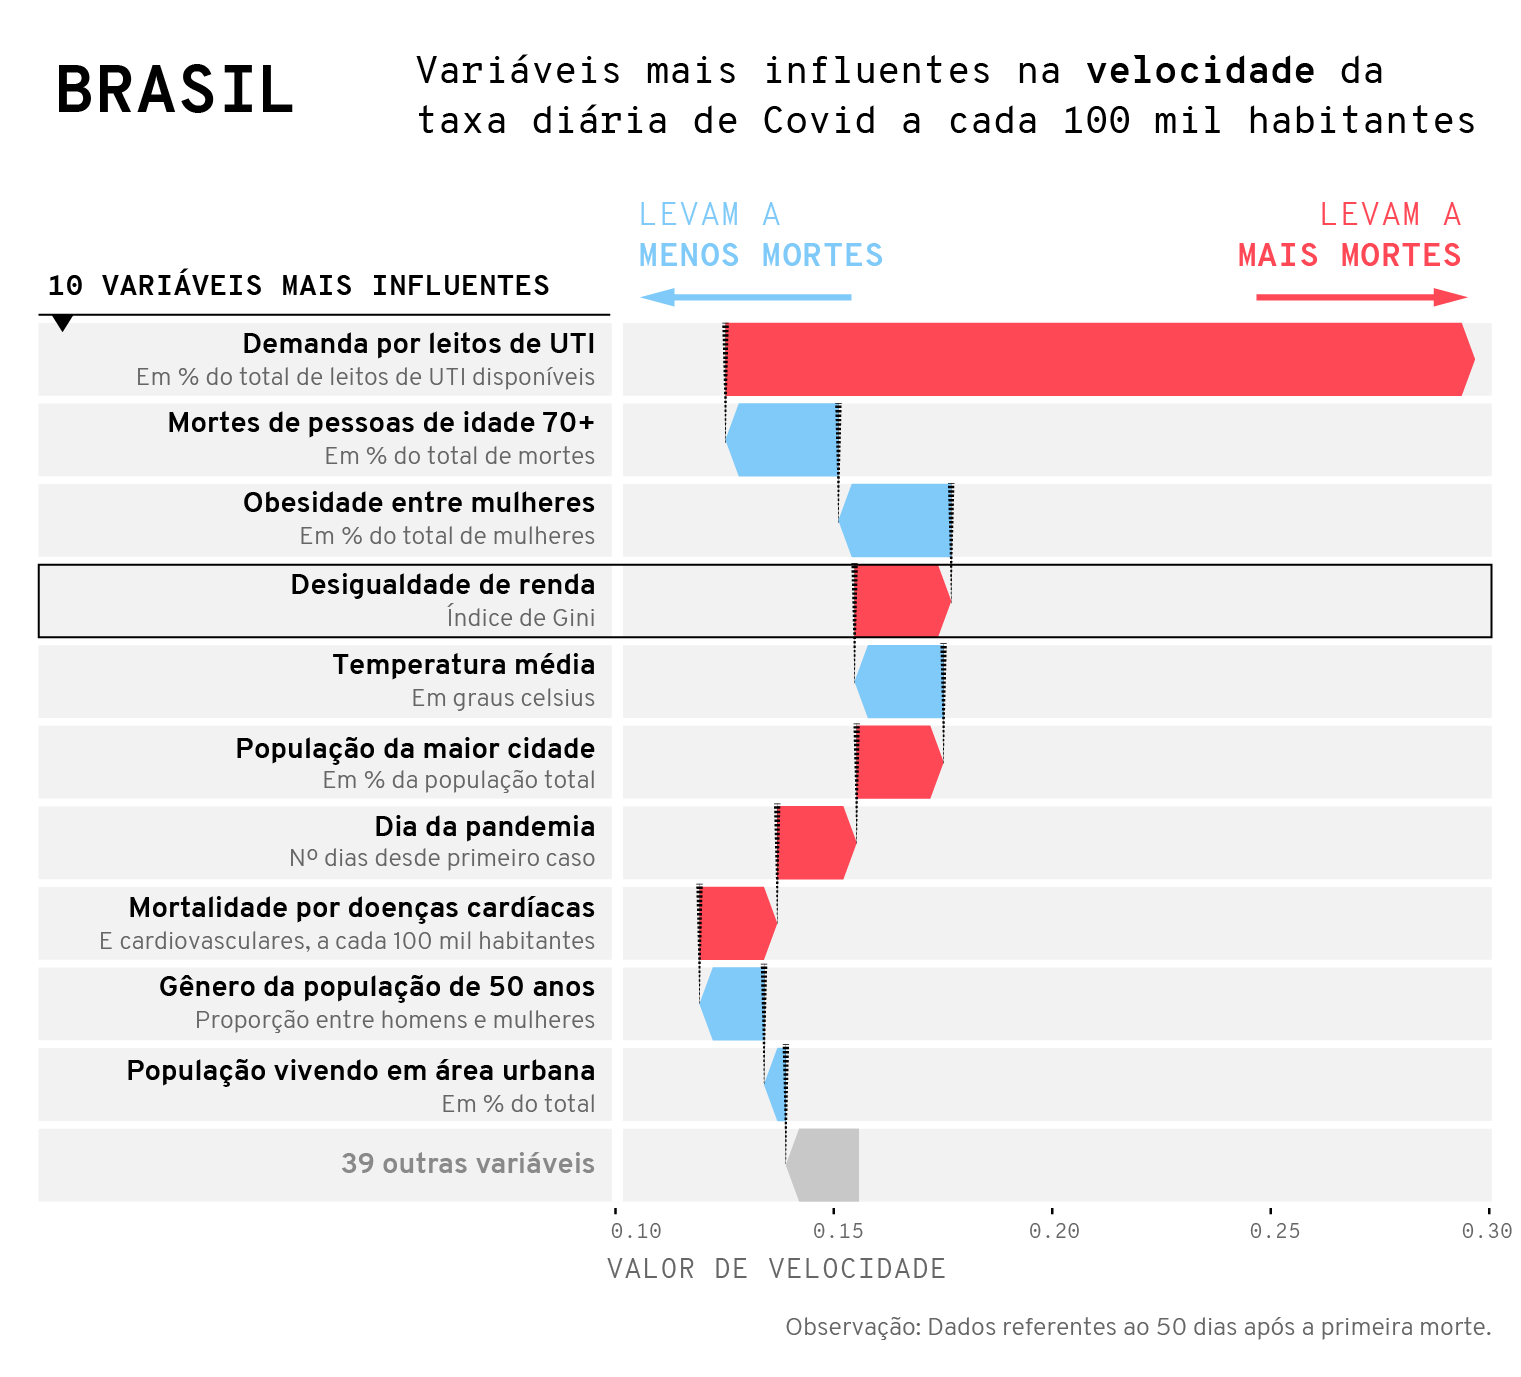 Principais influências na velocidade de crescimento das taxas diárias da doença a cada 100 mil habitantes no Brasil.